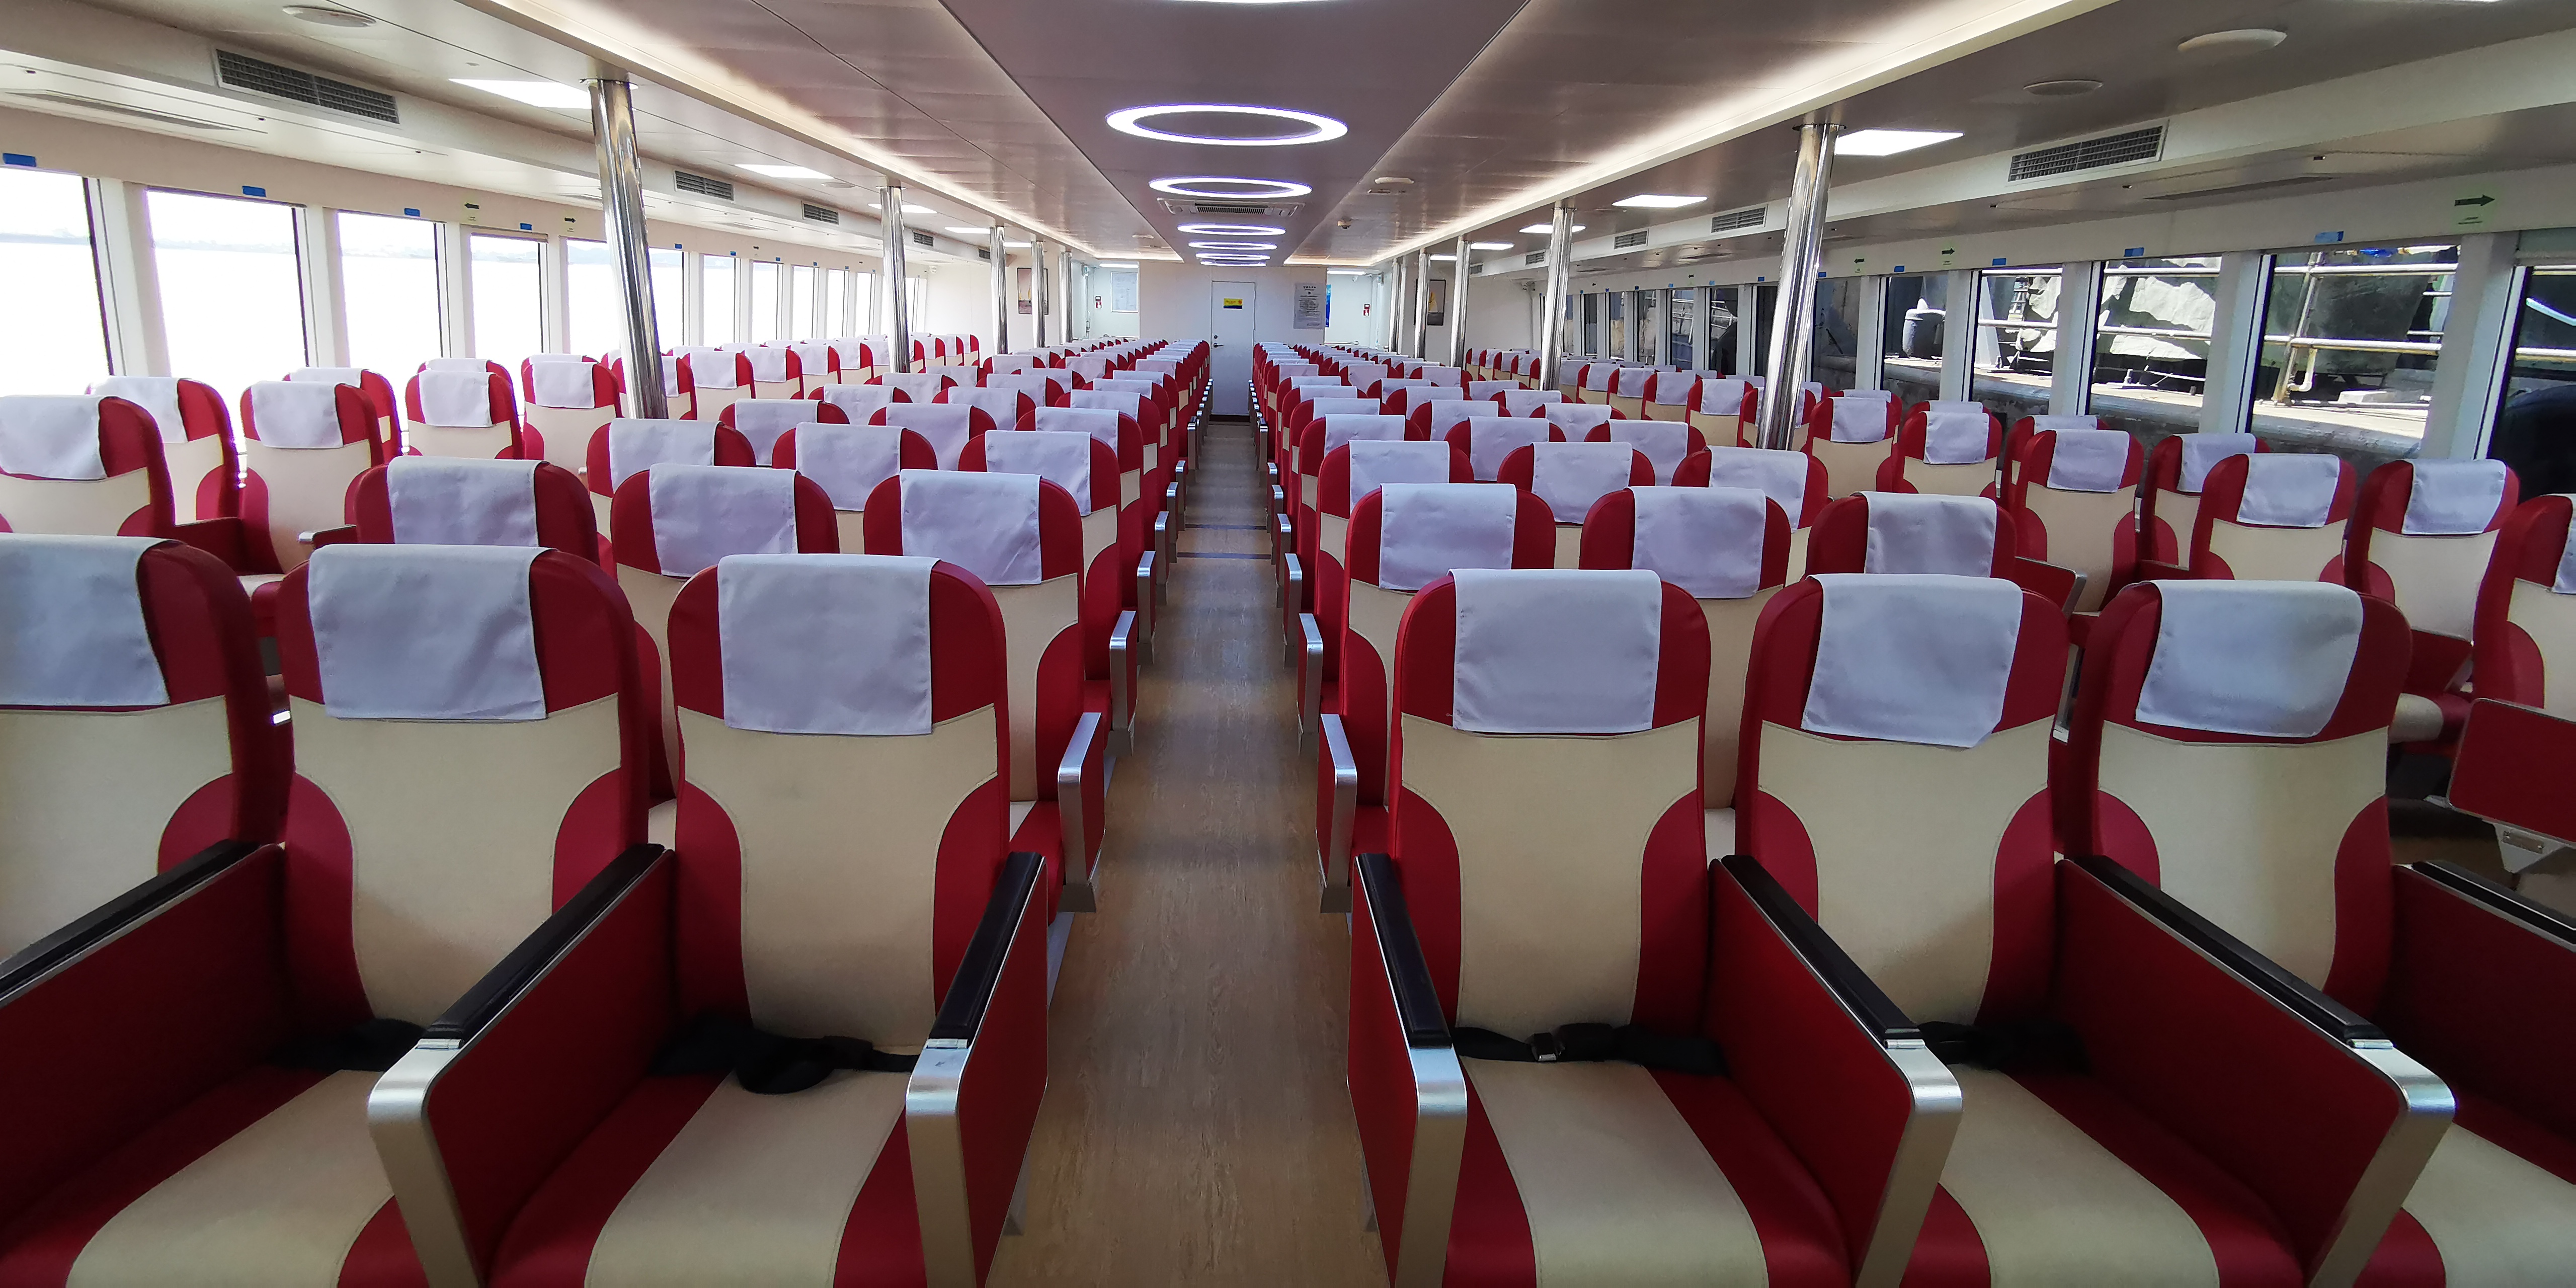 客舱座位分为普通舱,头等舱和贵宾舱